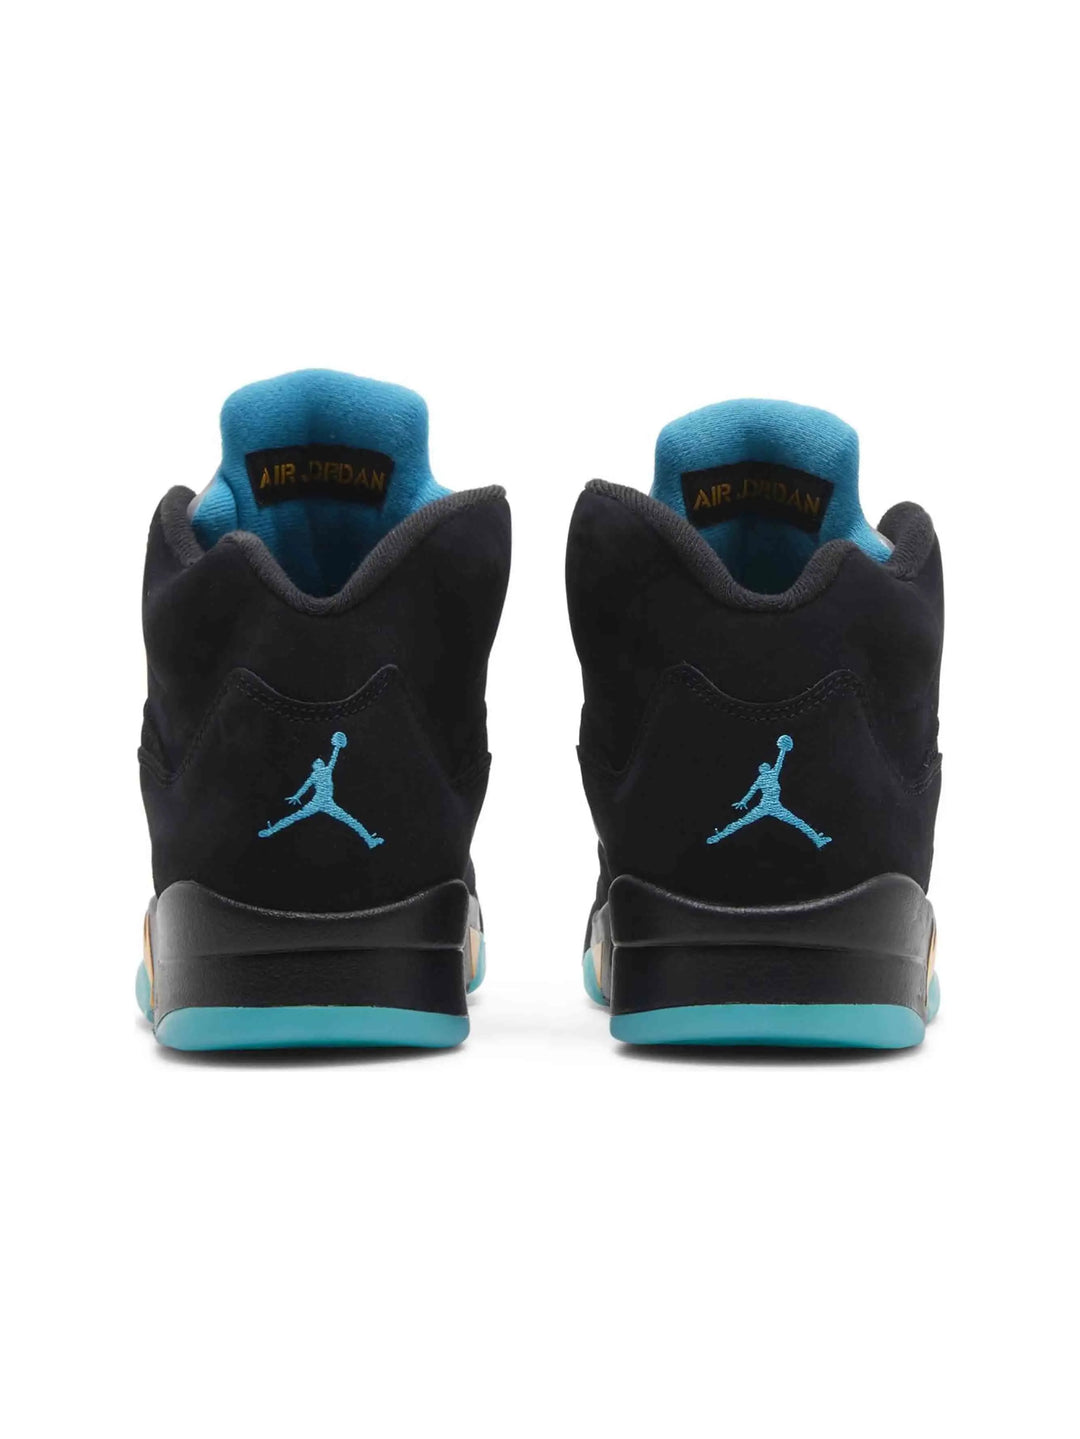 Nike Air Jordan 5 Retro Aqua Prior